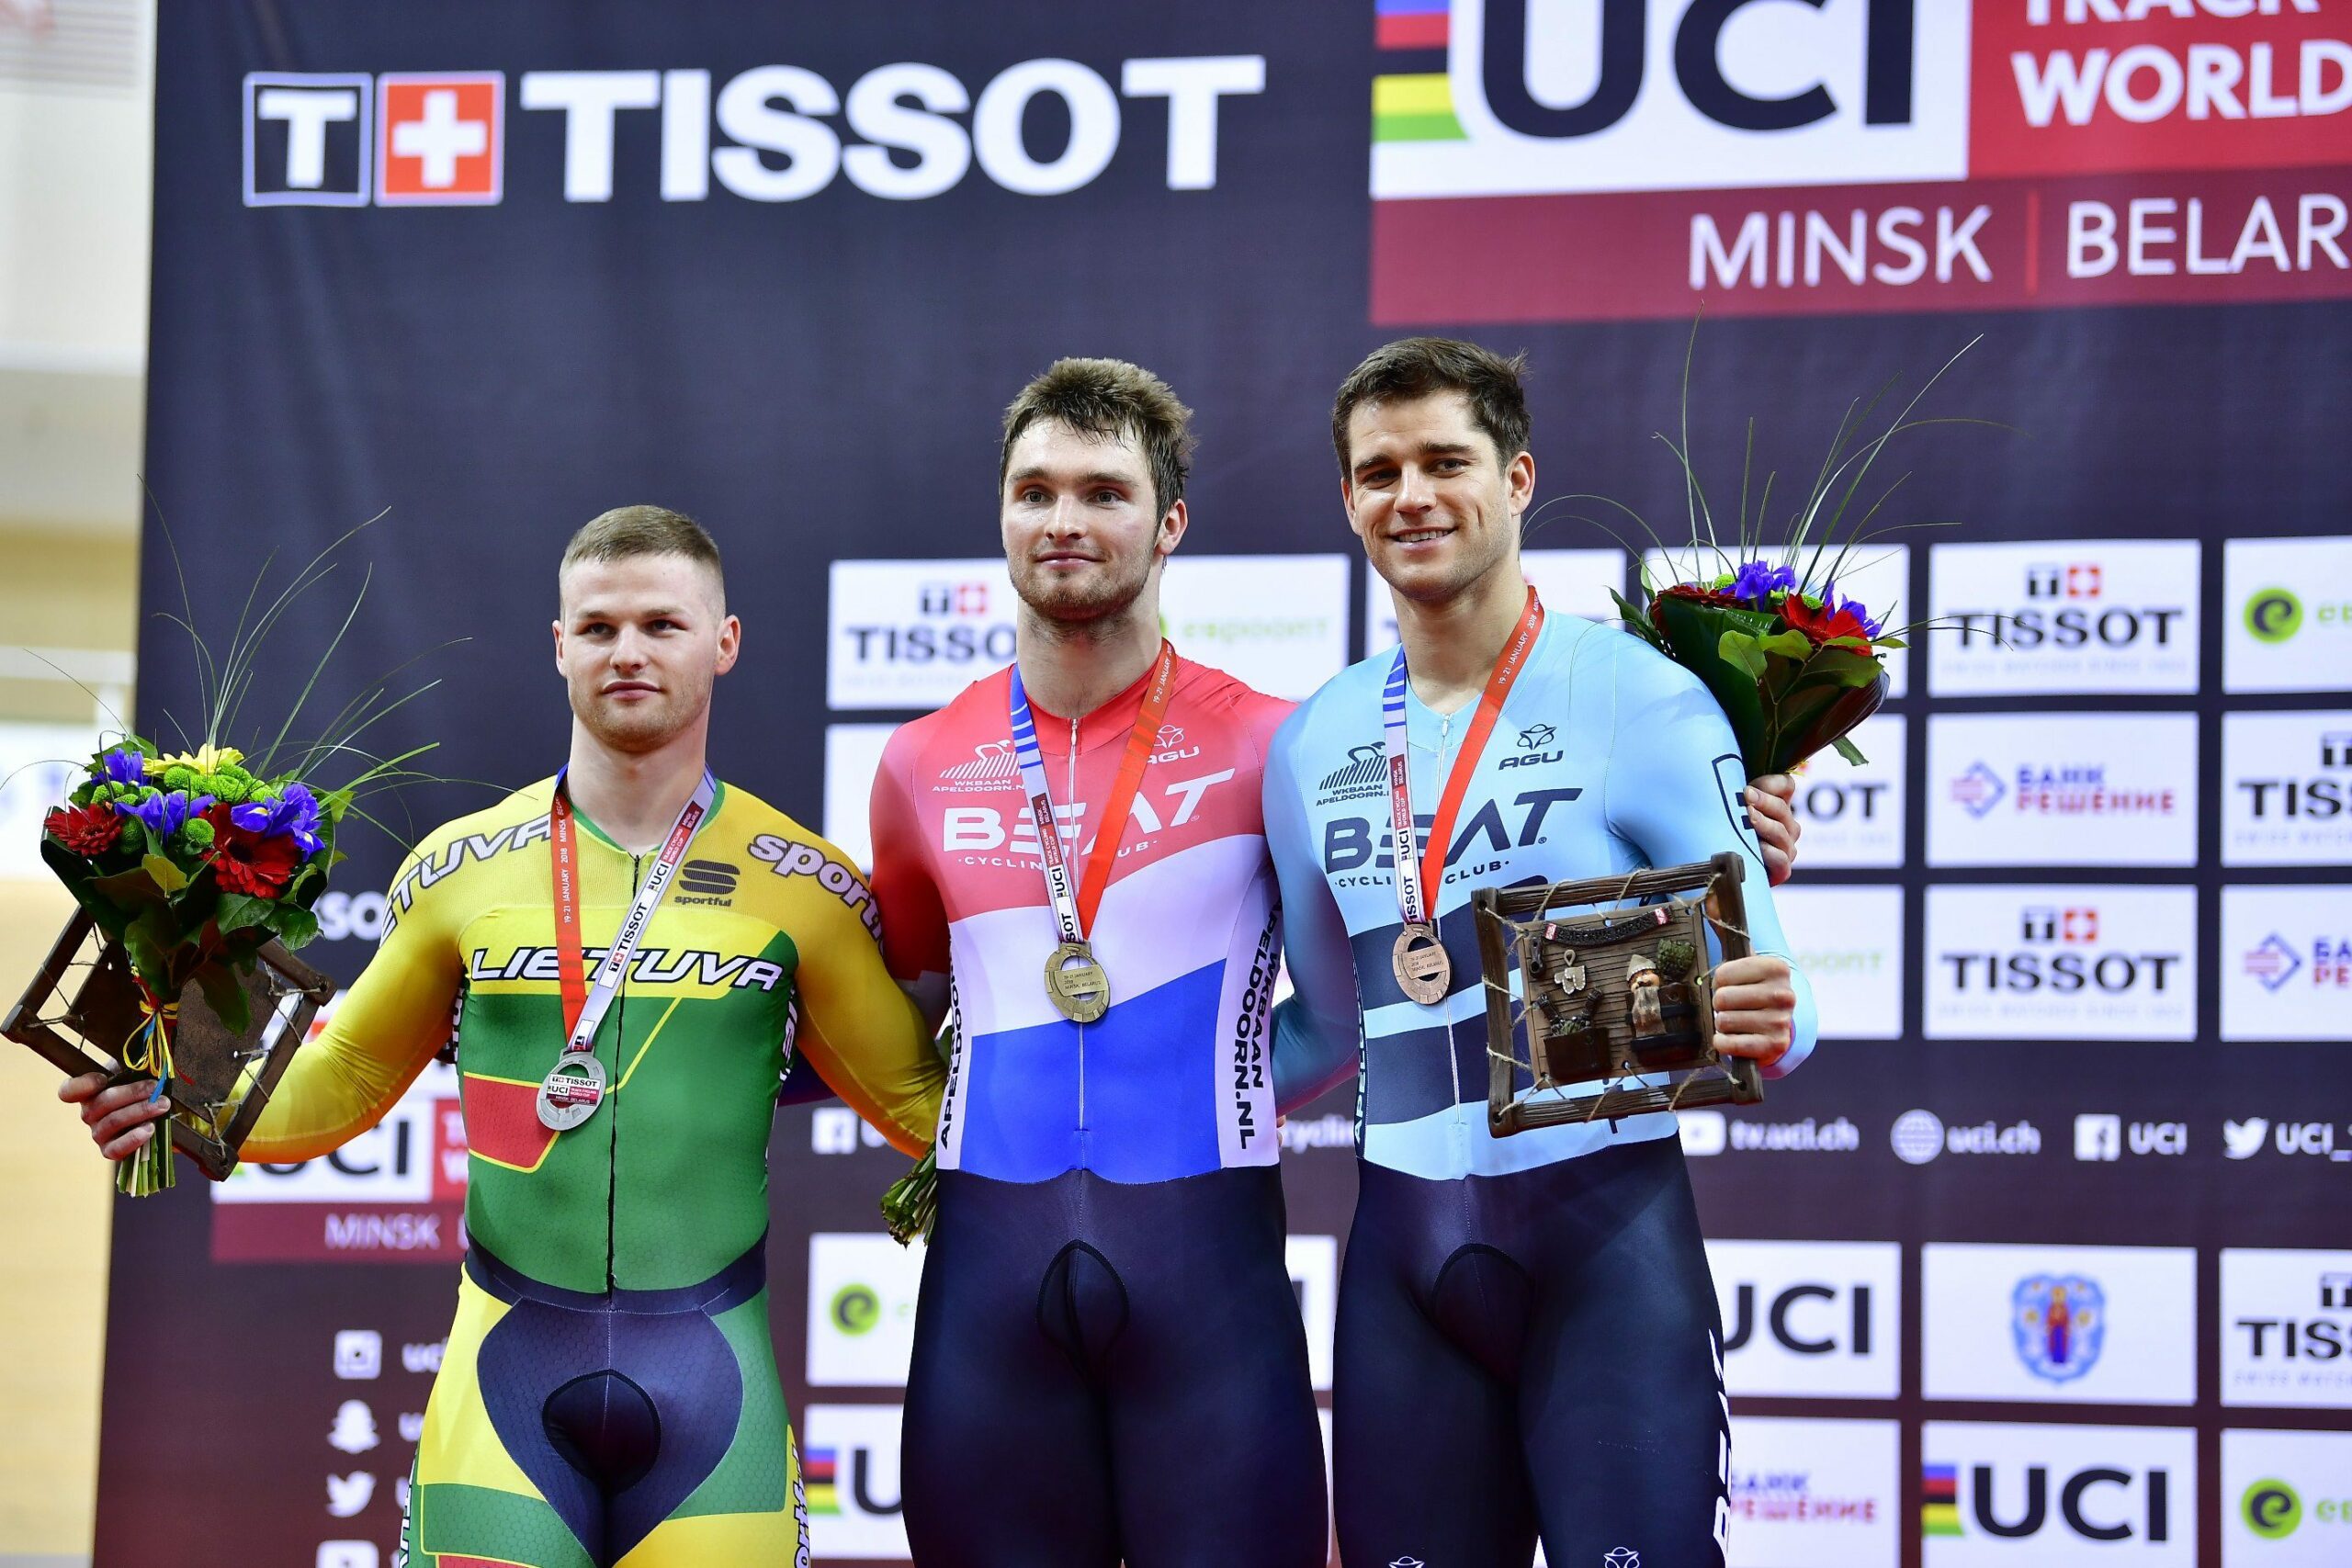 Маттейс Бюхли выиграл спринт на Кубке мира по треку в Минске